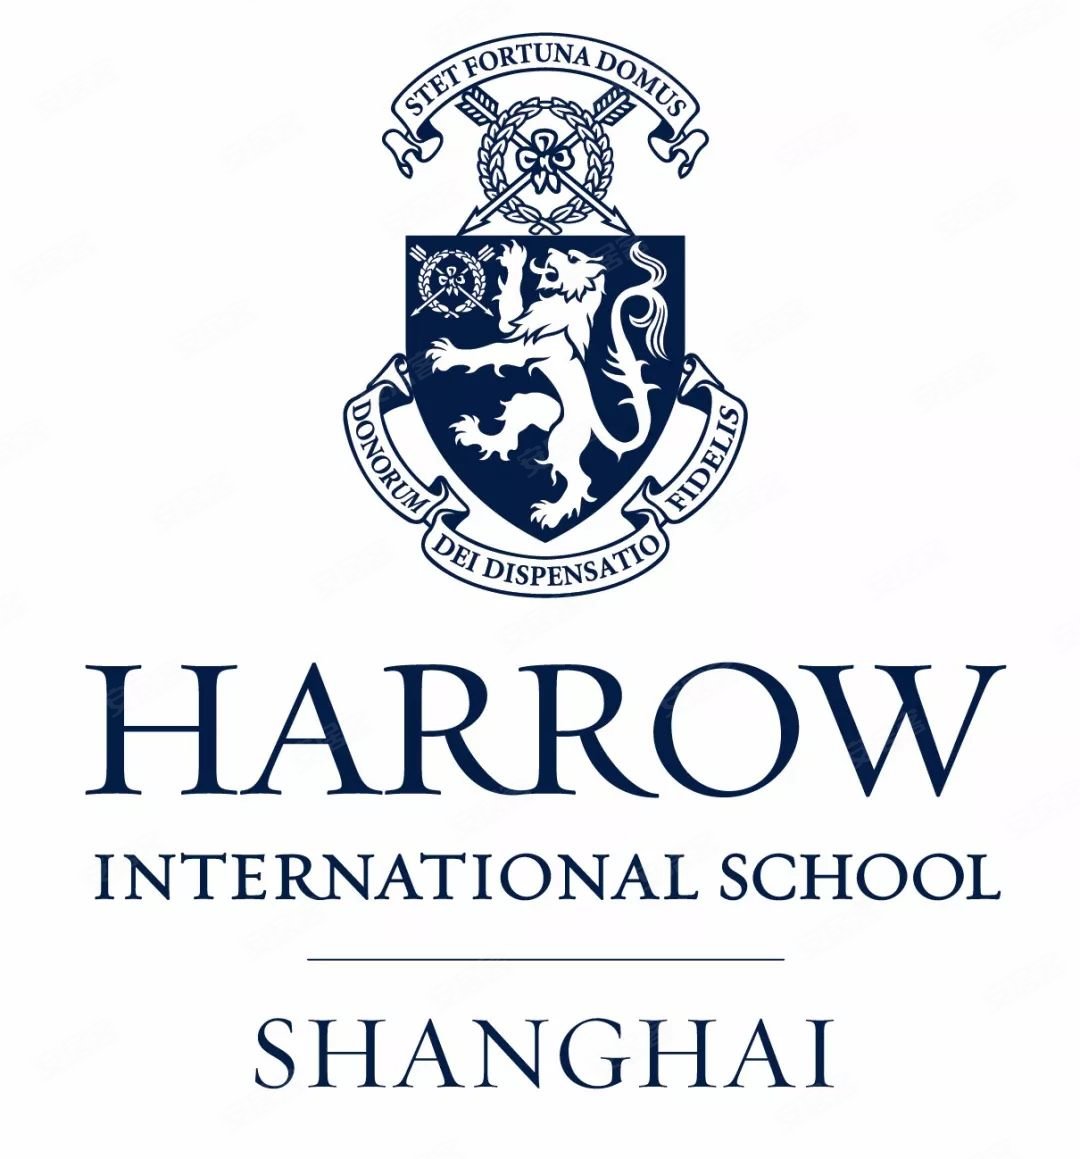 上海哈罗国际学校非常新,于2016年才开始对外招生,目前学校有大约680